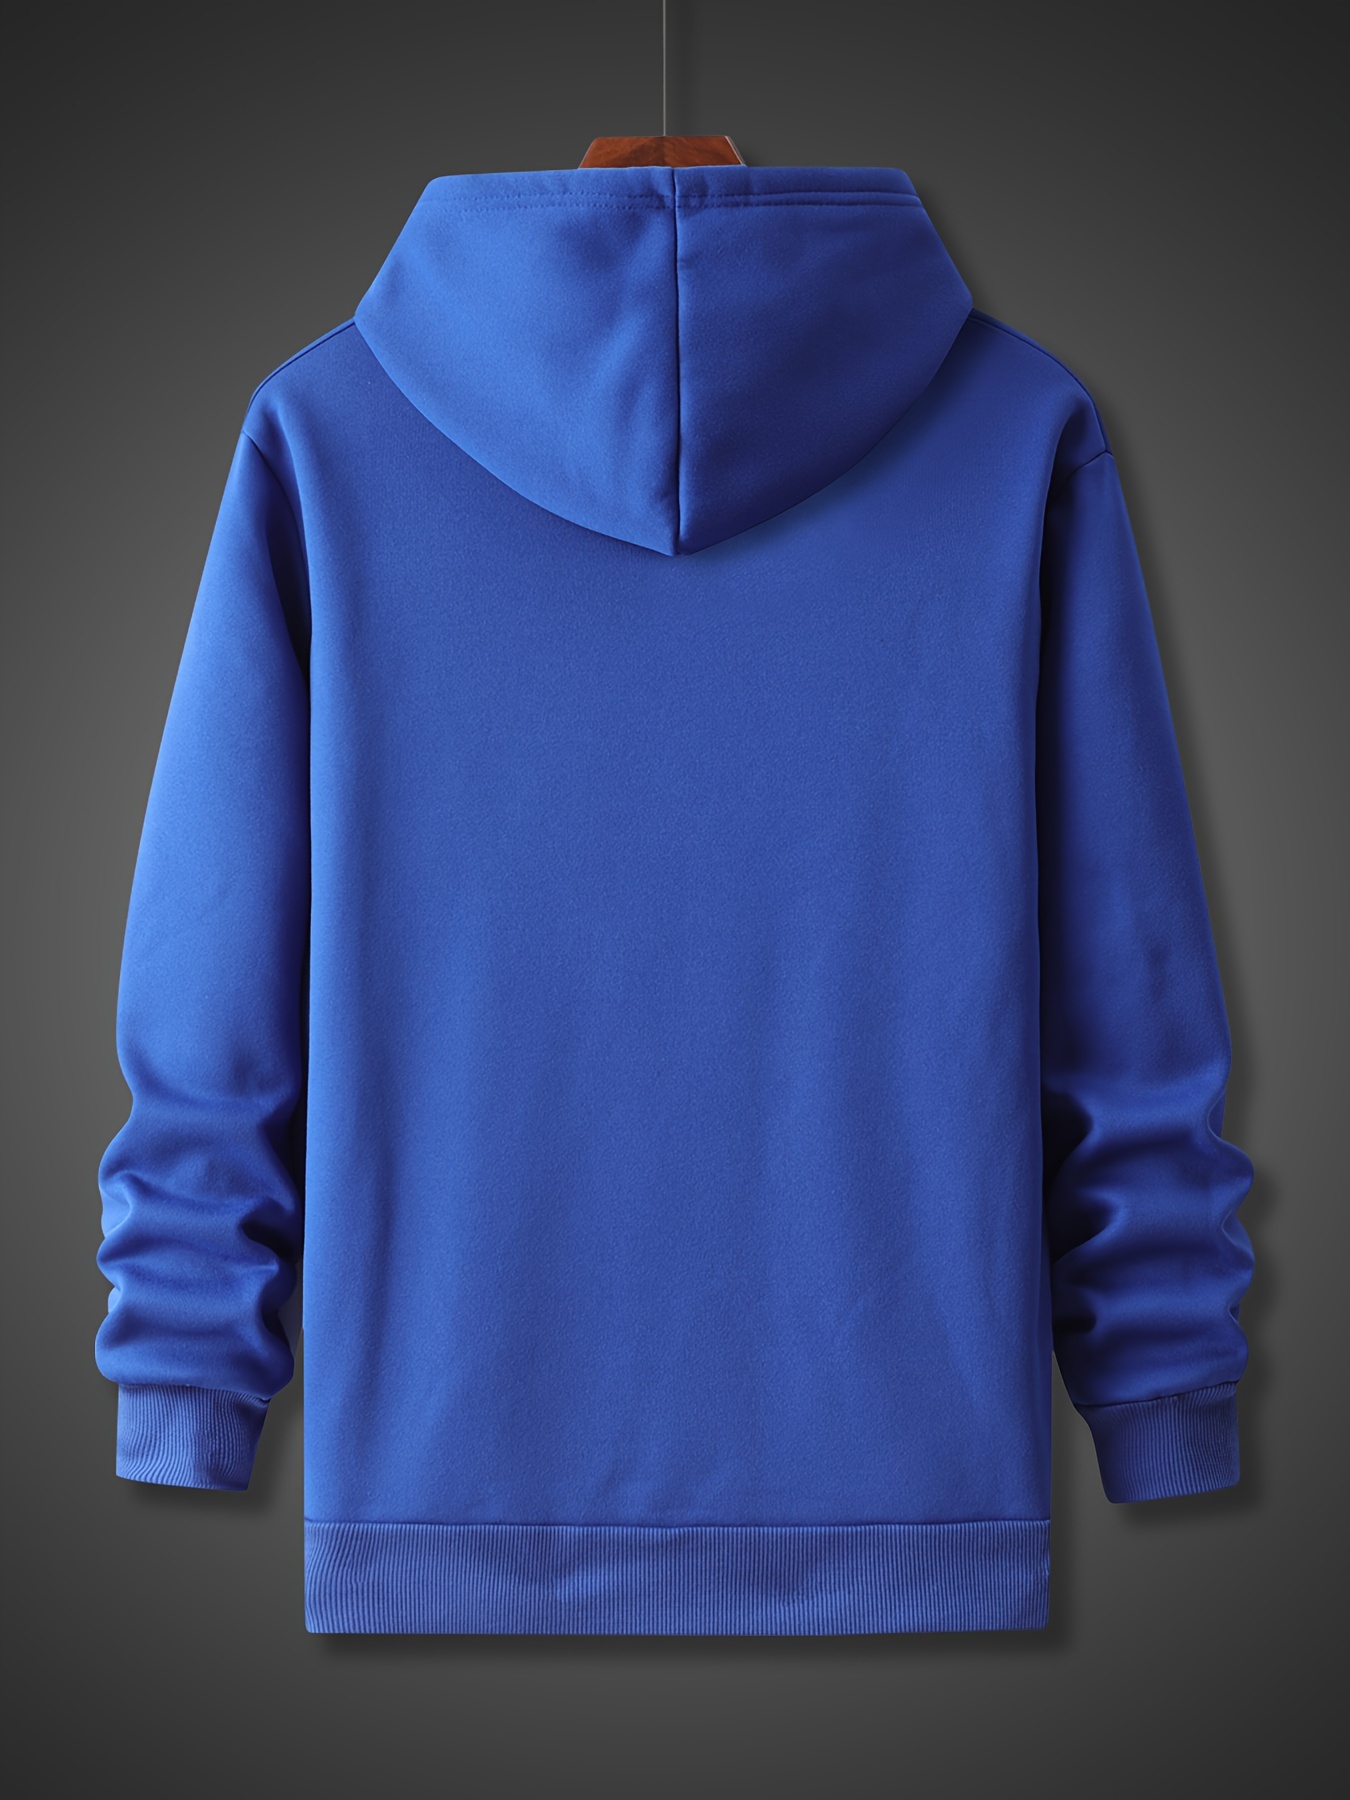 Men’s Trendy Comfy Hoodie – Breathable Stretch Sweatshirt for Outdoor Comfort